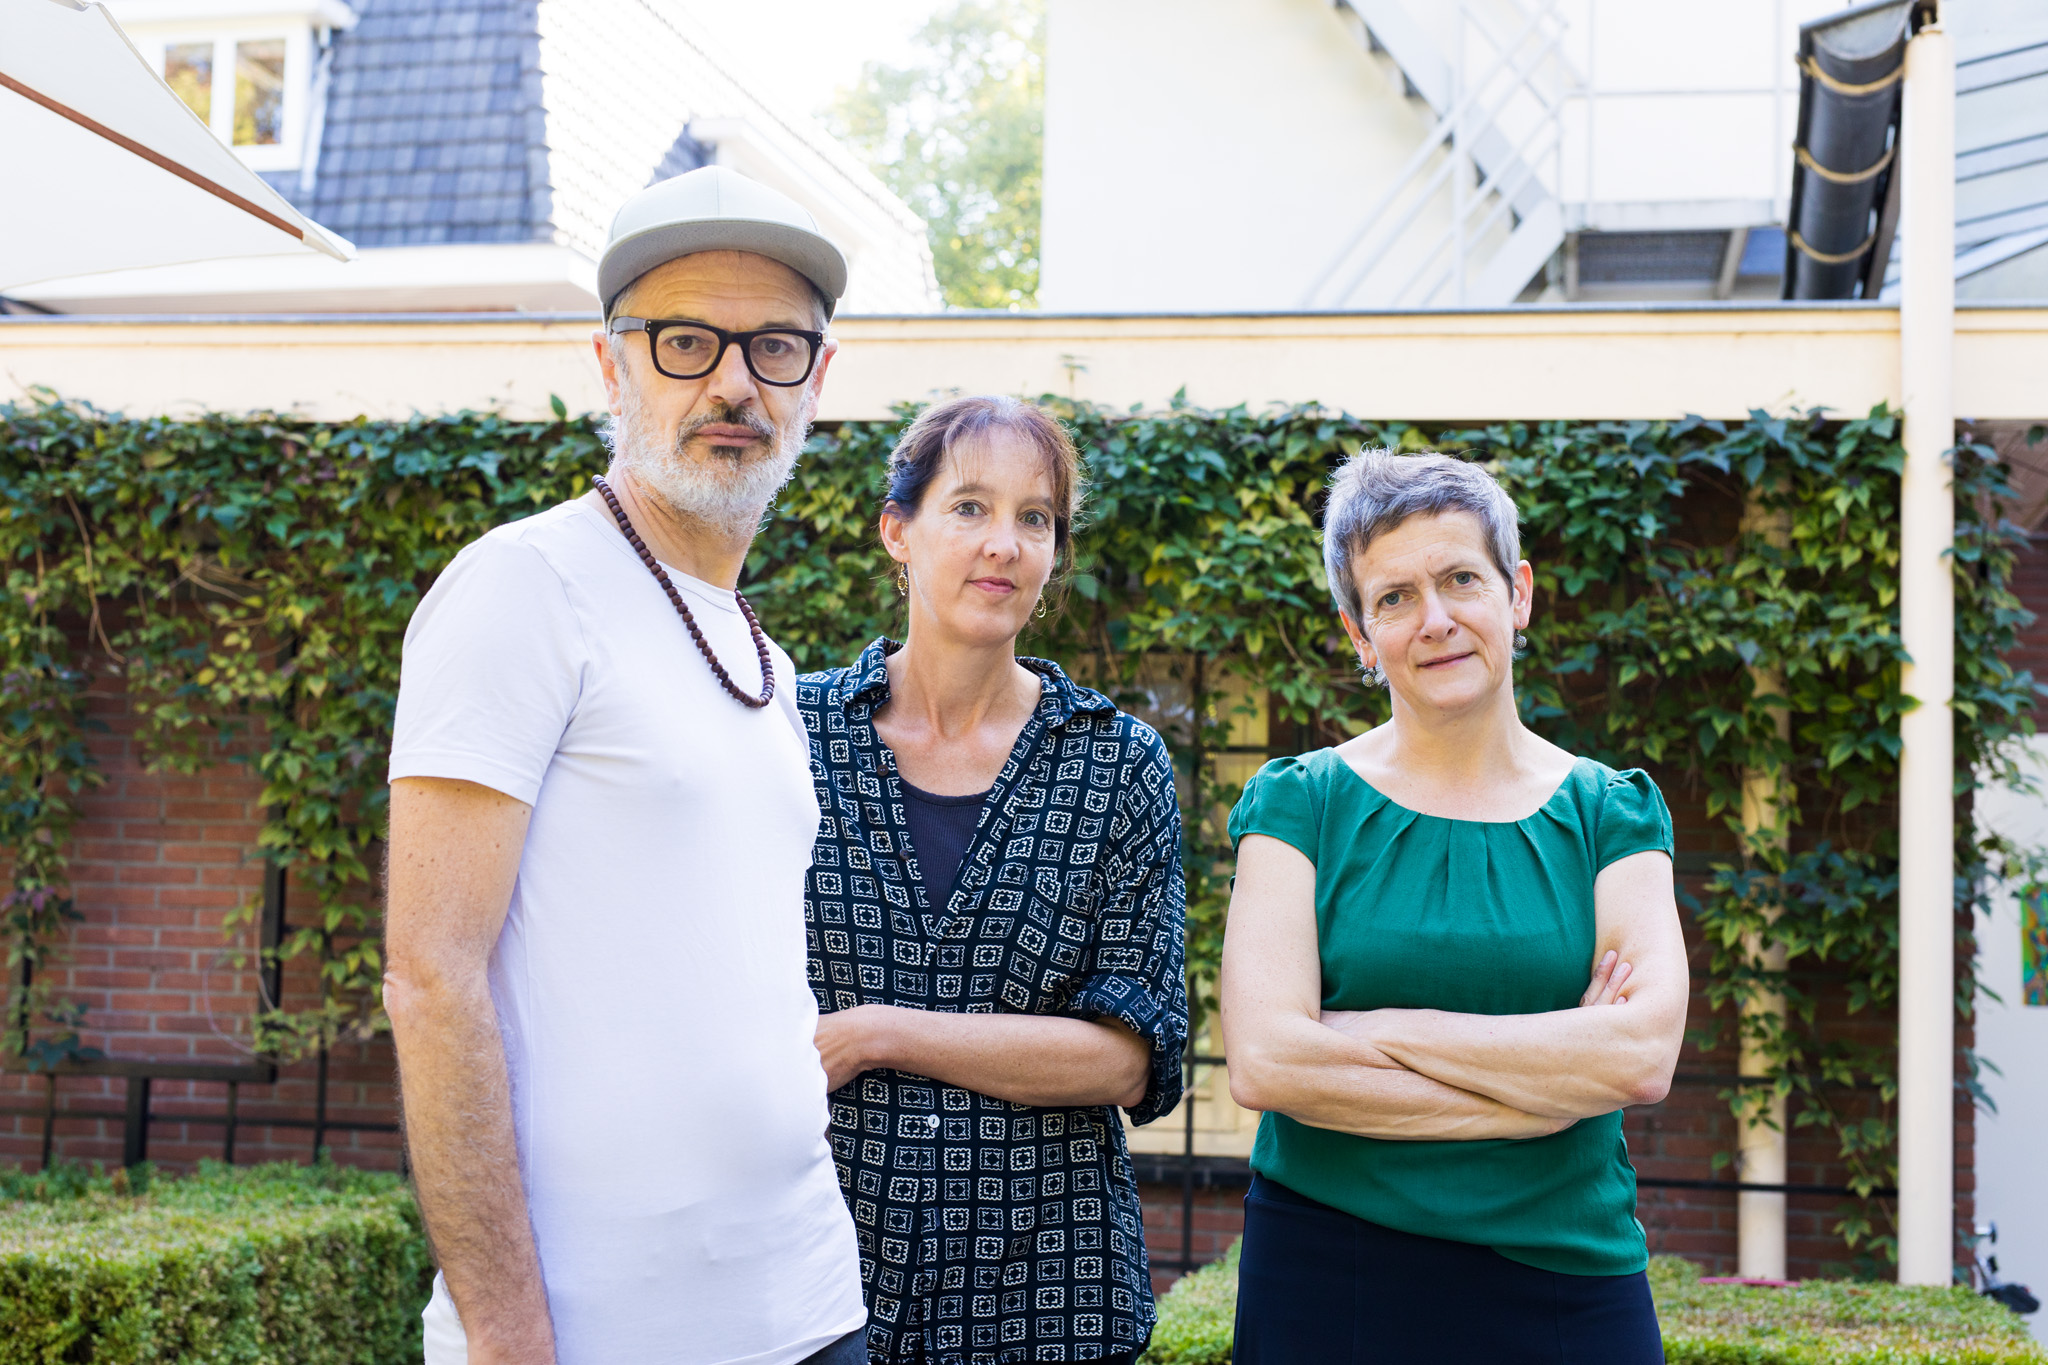 Uli Kürner, Anna van Suchtelen en Carien Vugts in de tuin